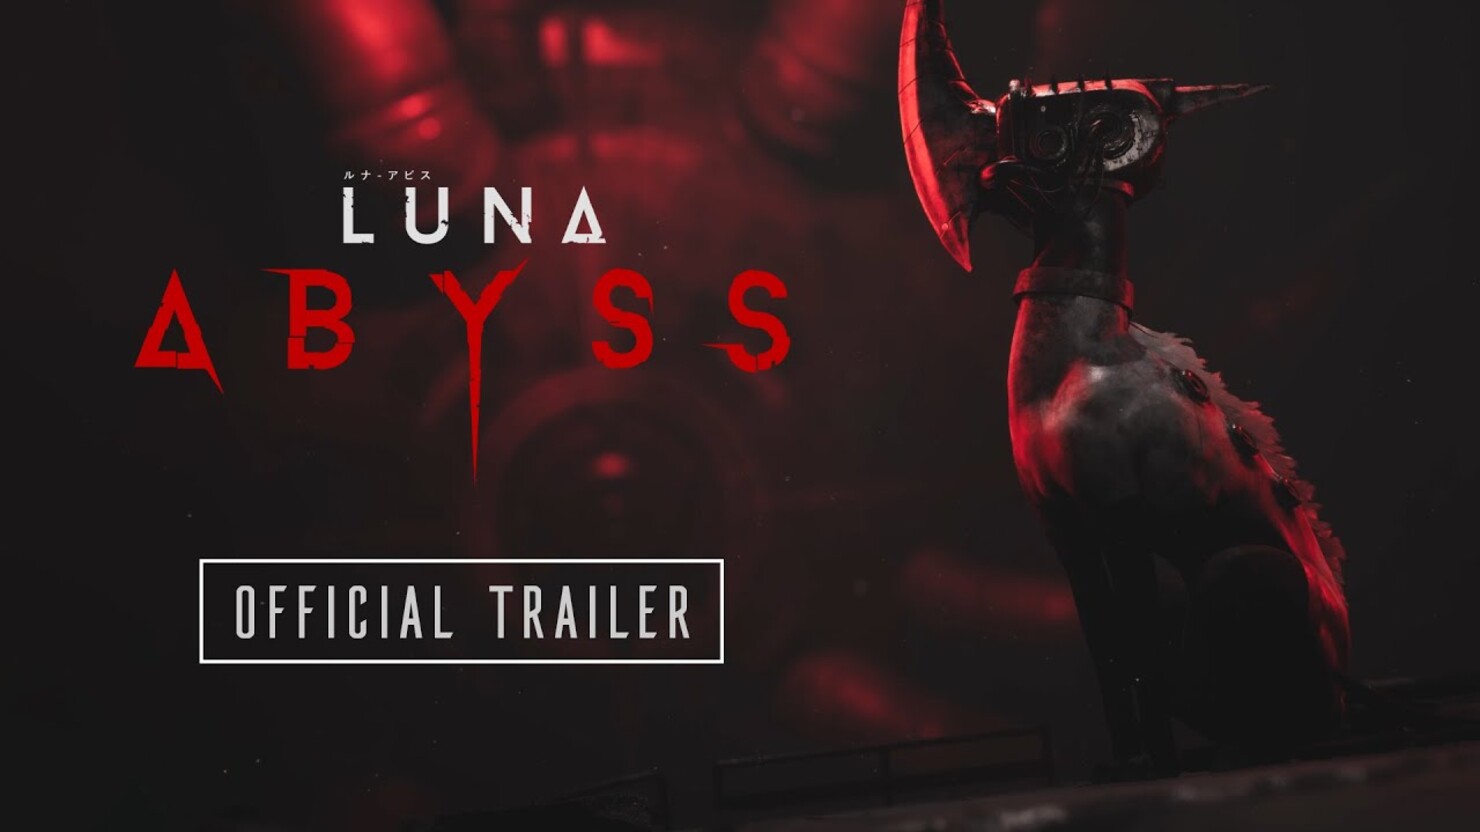 Бездна зовёт: трейлер Luna Abyss заманивает публику обещаниями мрачной фантастической истории